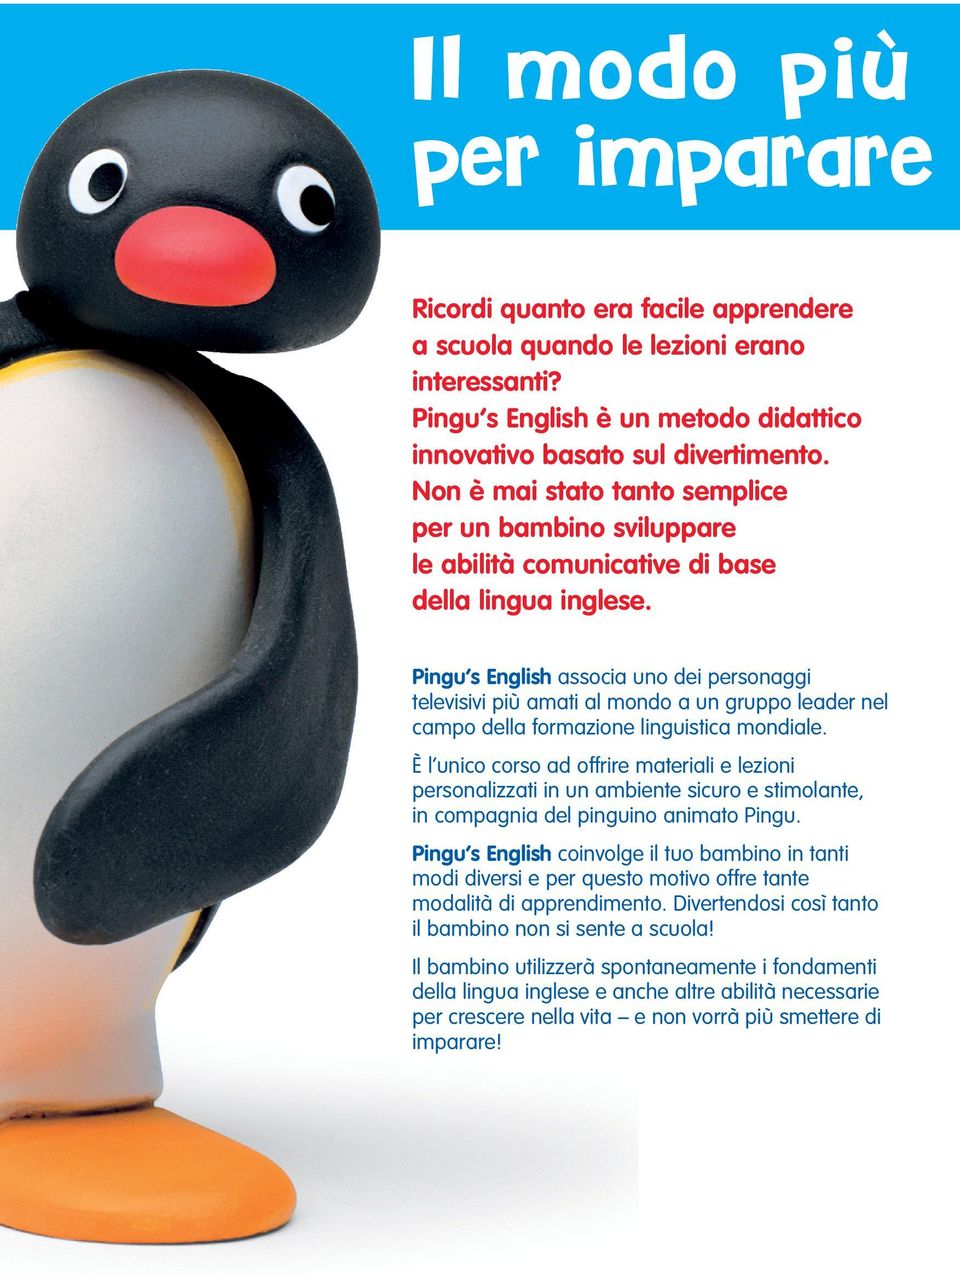 Pingu s English associa uno dei personaggi televisivi più amati al mondo a un gruppo leader nel campo della formazione linguistica mondiale.